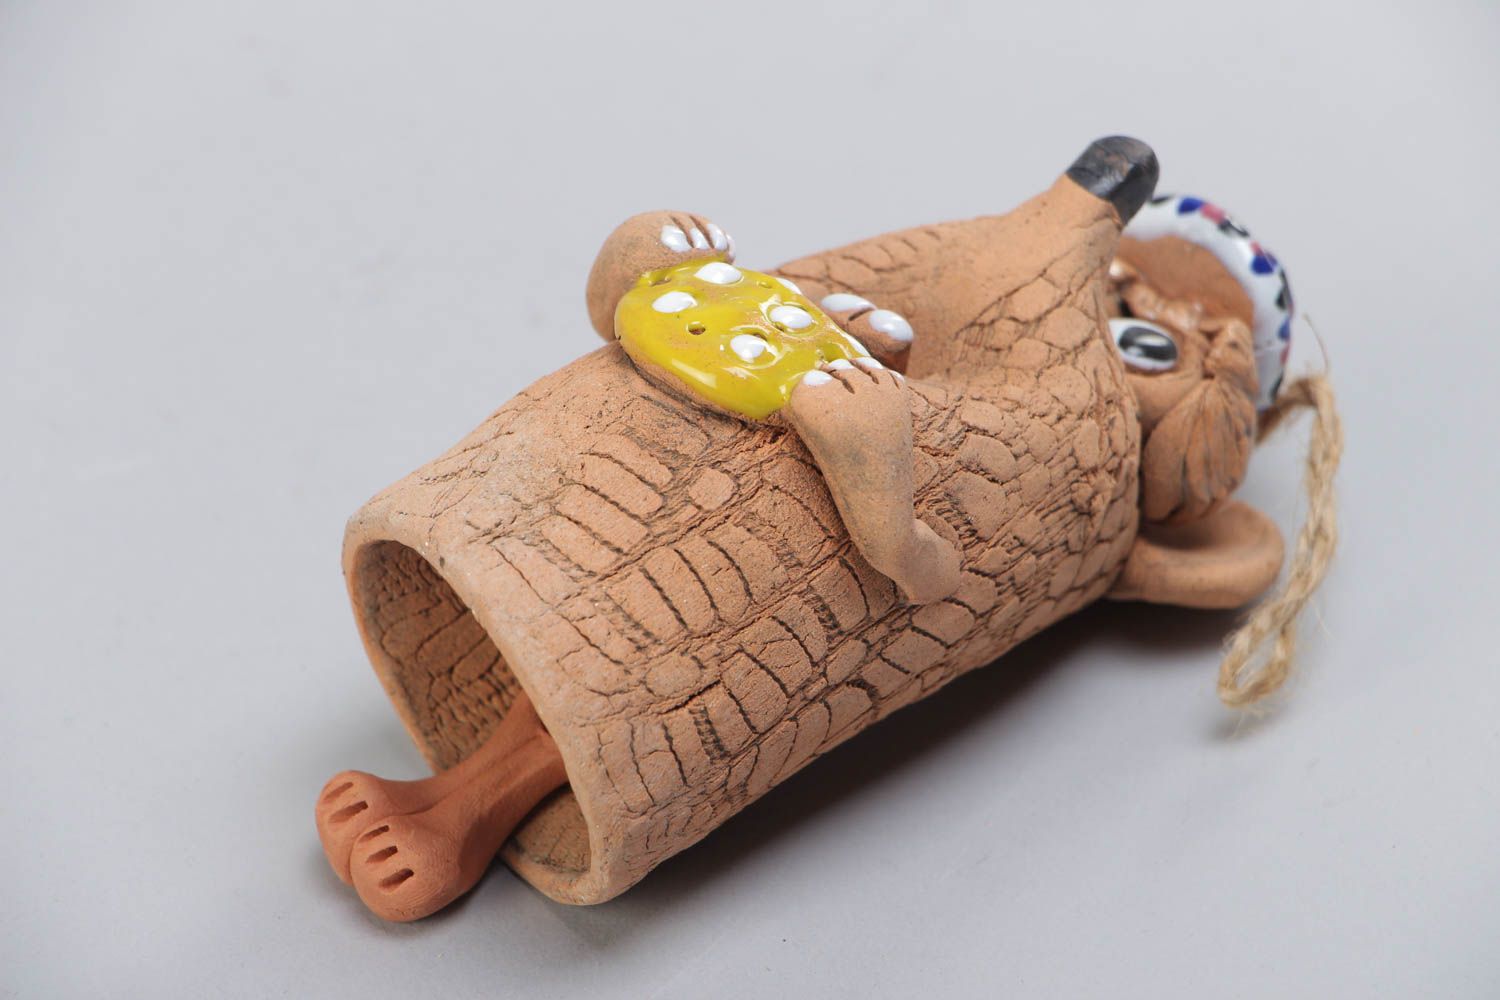 Расписанный красками глиняный колокольчик в виде мышки с сыром ручной работы фото 4